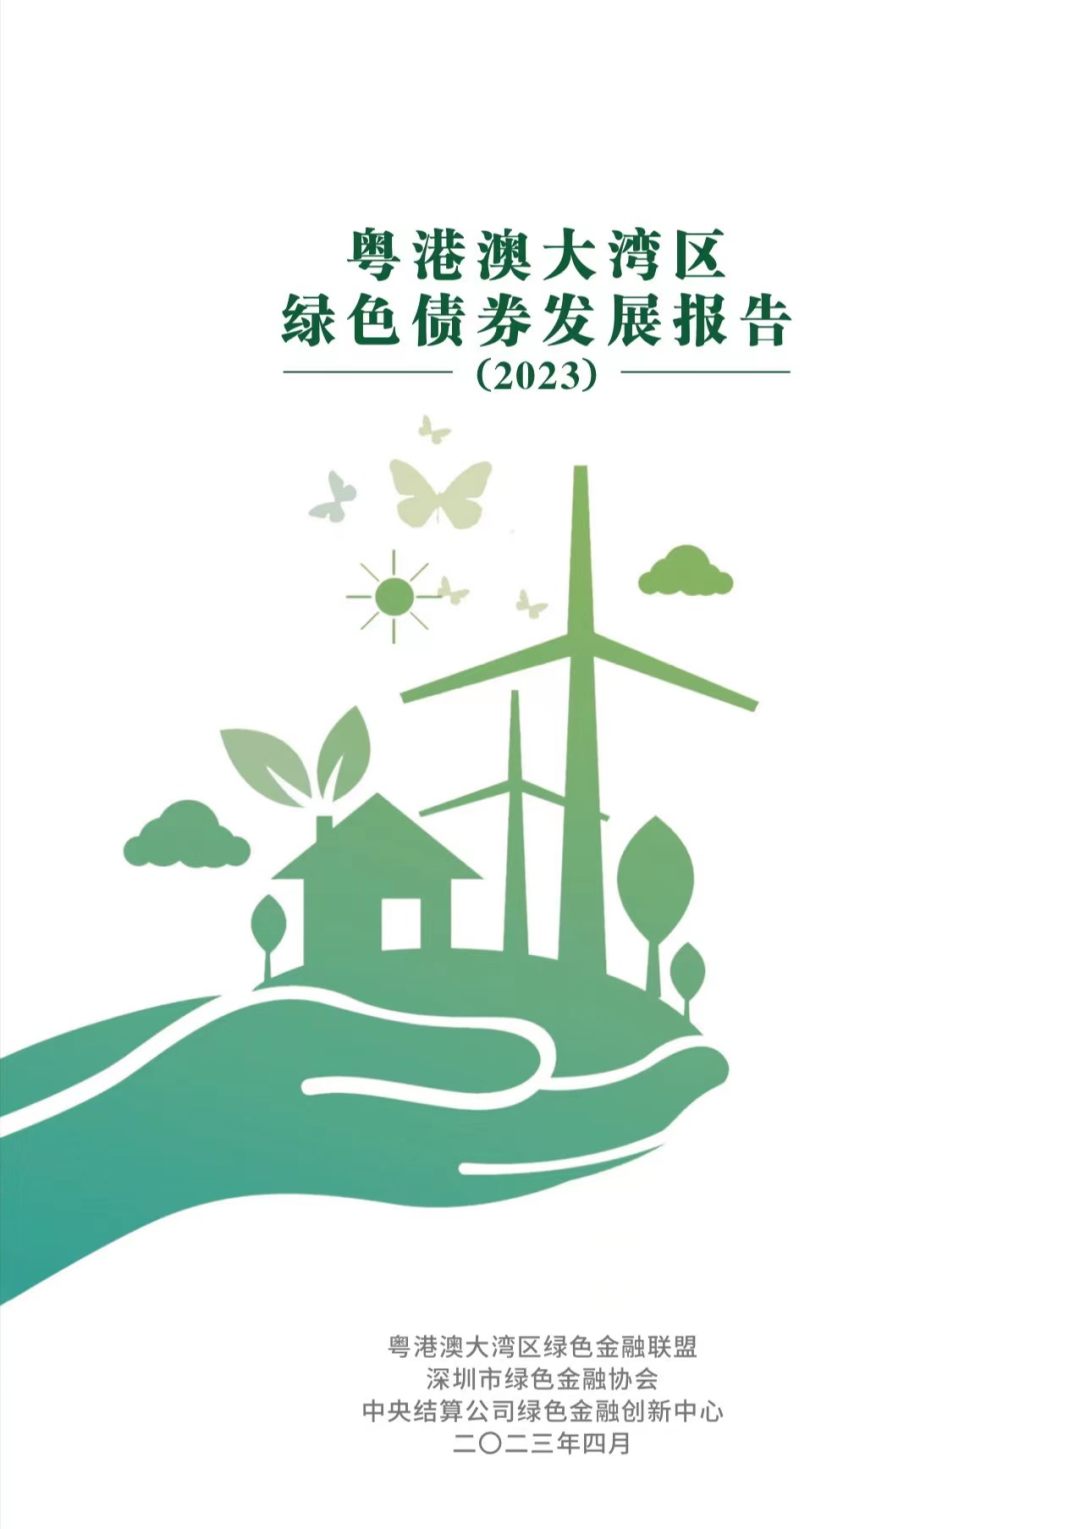 粤港澳大湾区绿色金融联盟、深圳市绿色金融协会与中央结算公司绿色金融创新中心联合发布《粤港澳大湾区绿色债券发展报告（2023）》